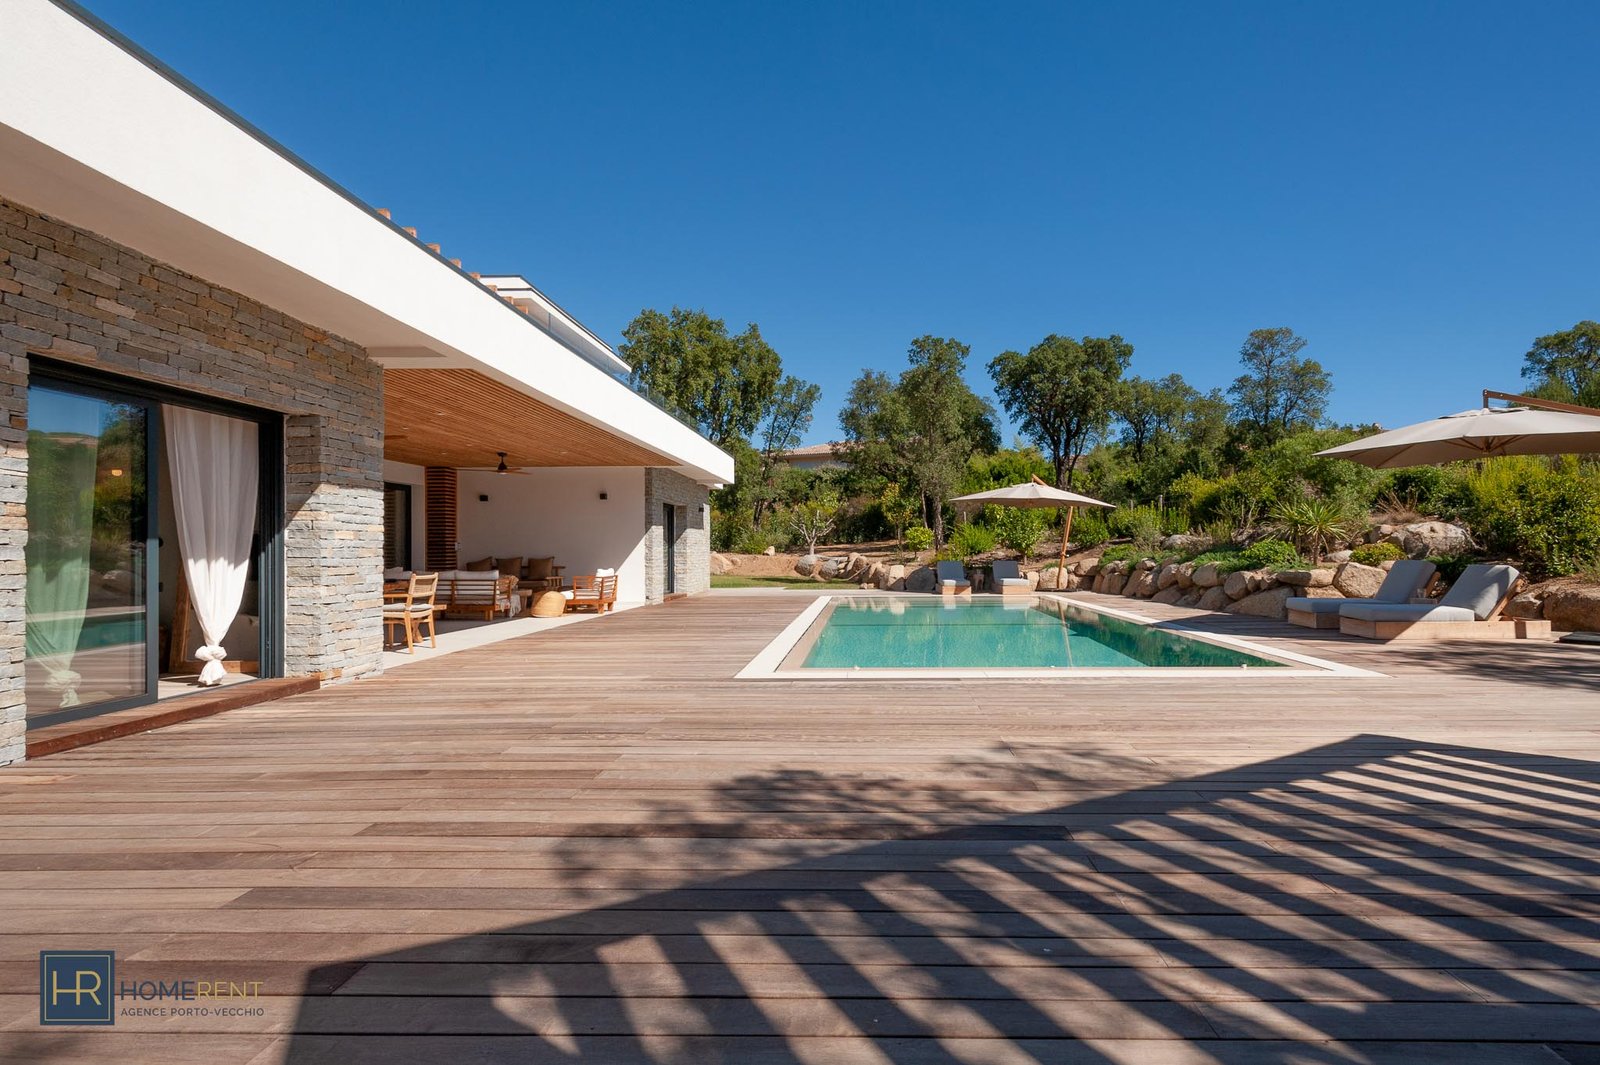 Location villa architecte à Porto Vecchio plage à pied Cabanon bleu St Cyprien piscine 5 chambres jardin climatisée